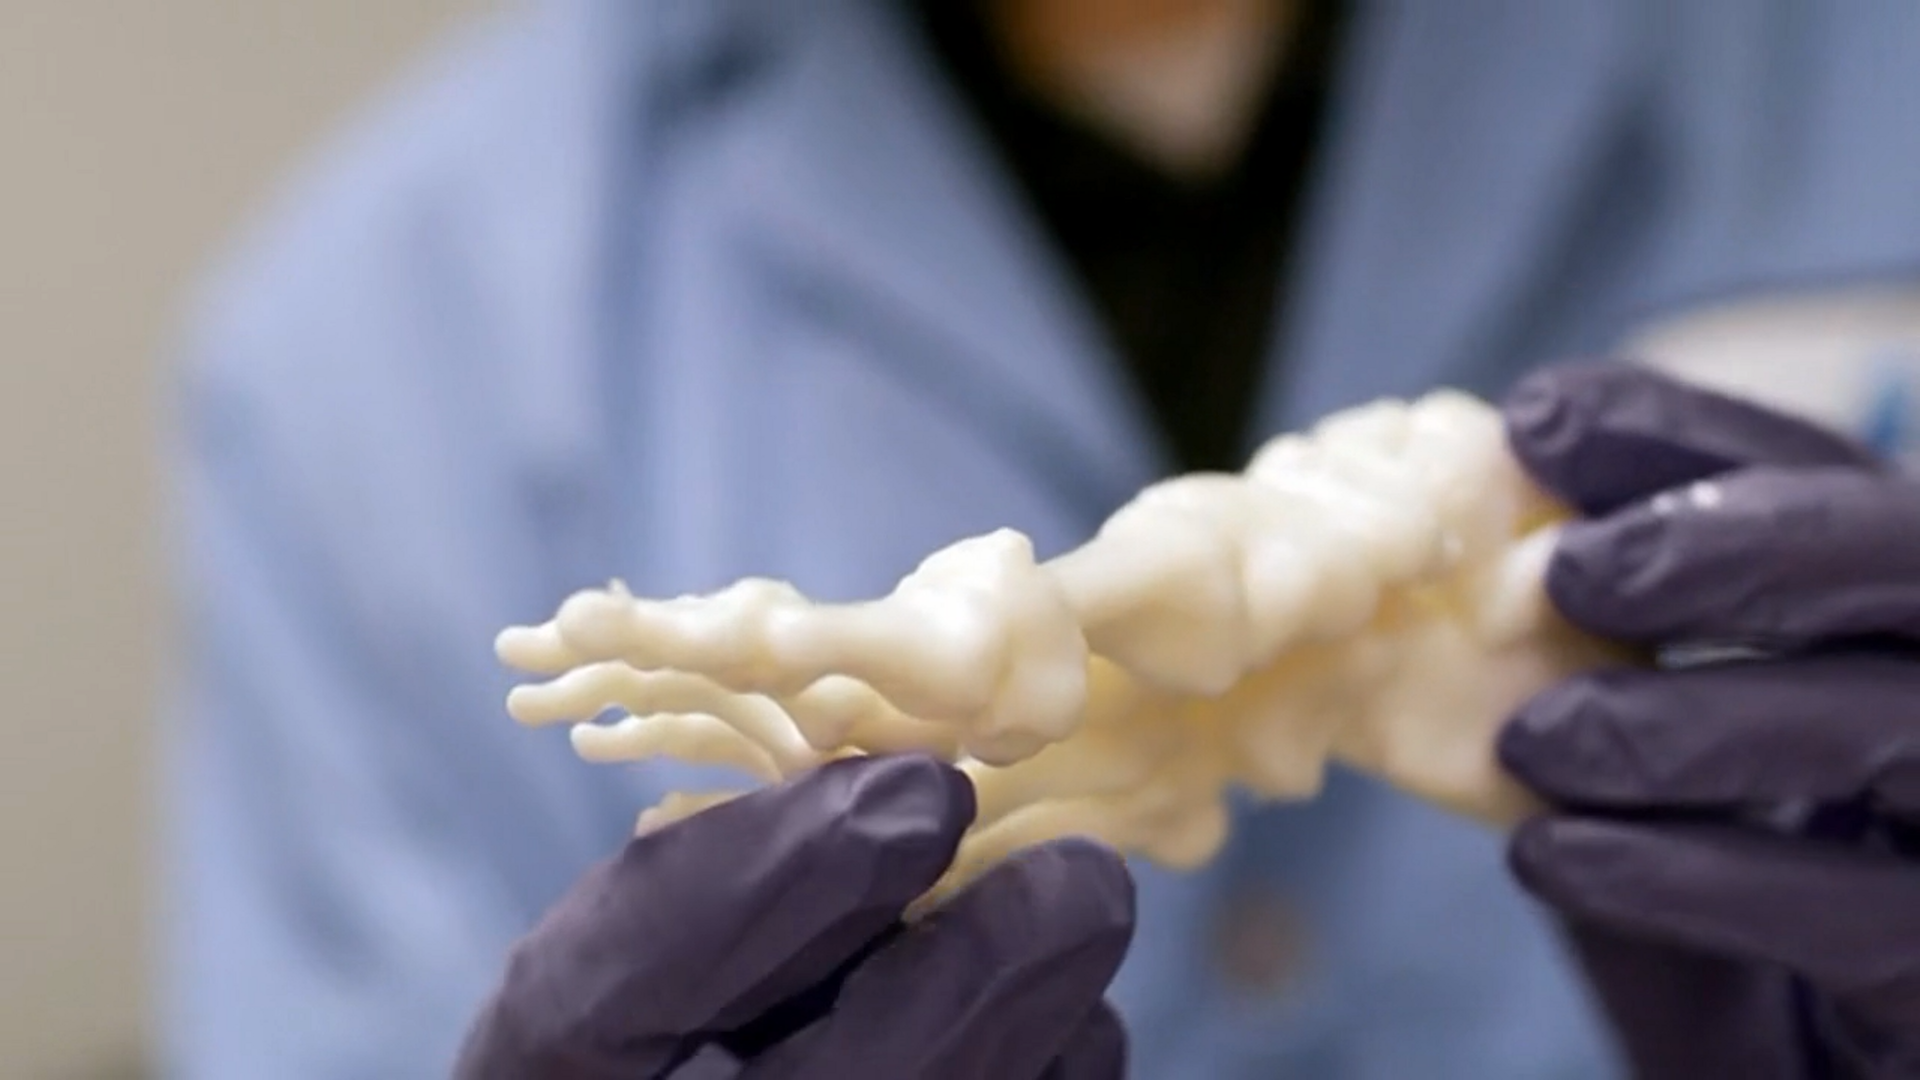 A 3D printed anatomical model by PrinterPrezz. Image via PrinterPrezz